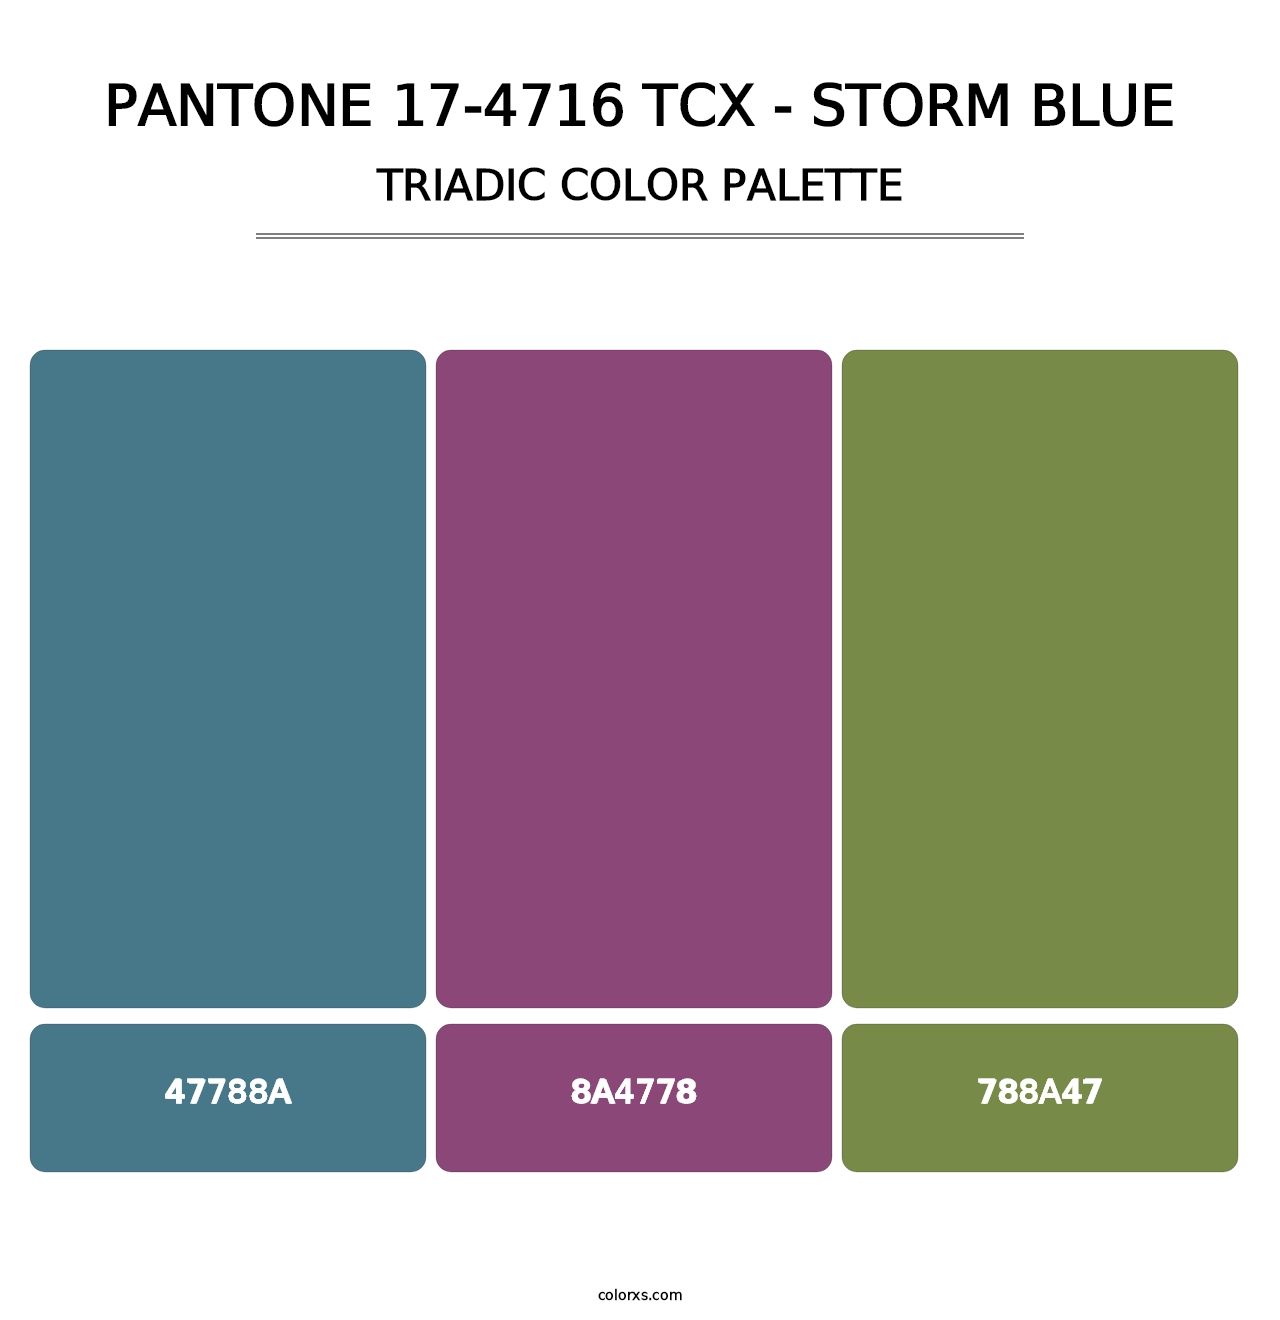 PANTONE 17-4716 TCX - Storm Blue - Triadic Color Palette